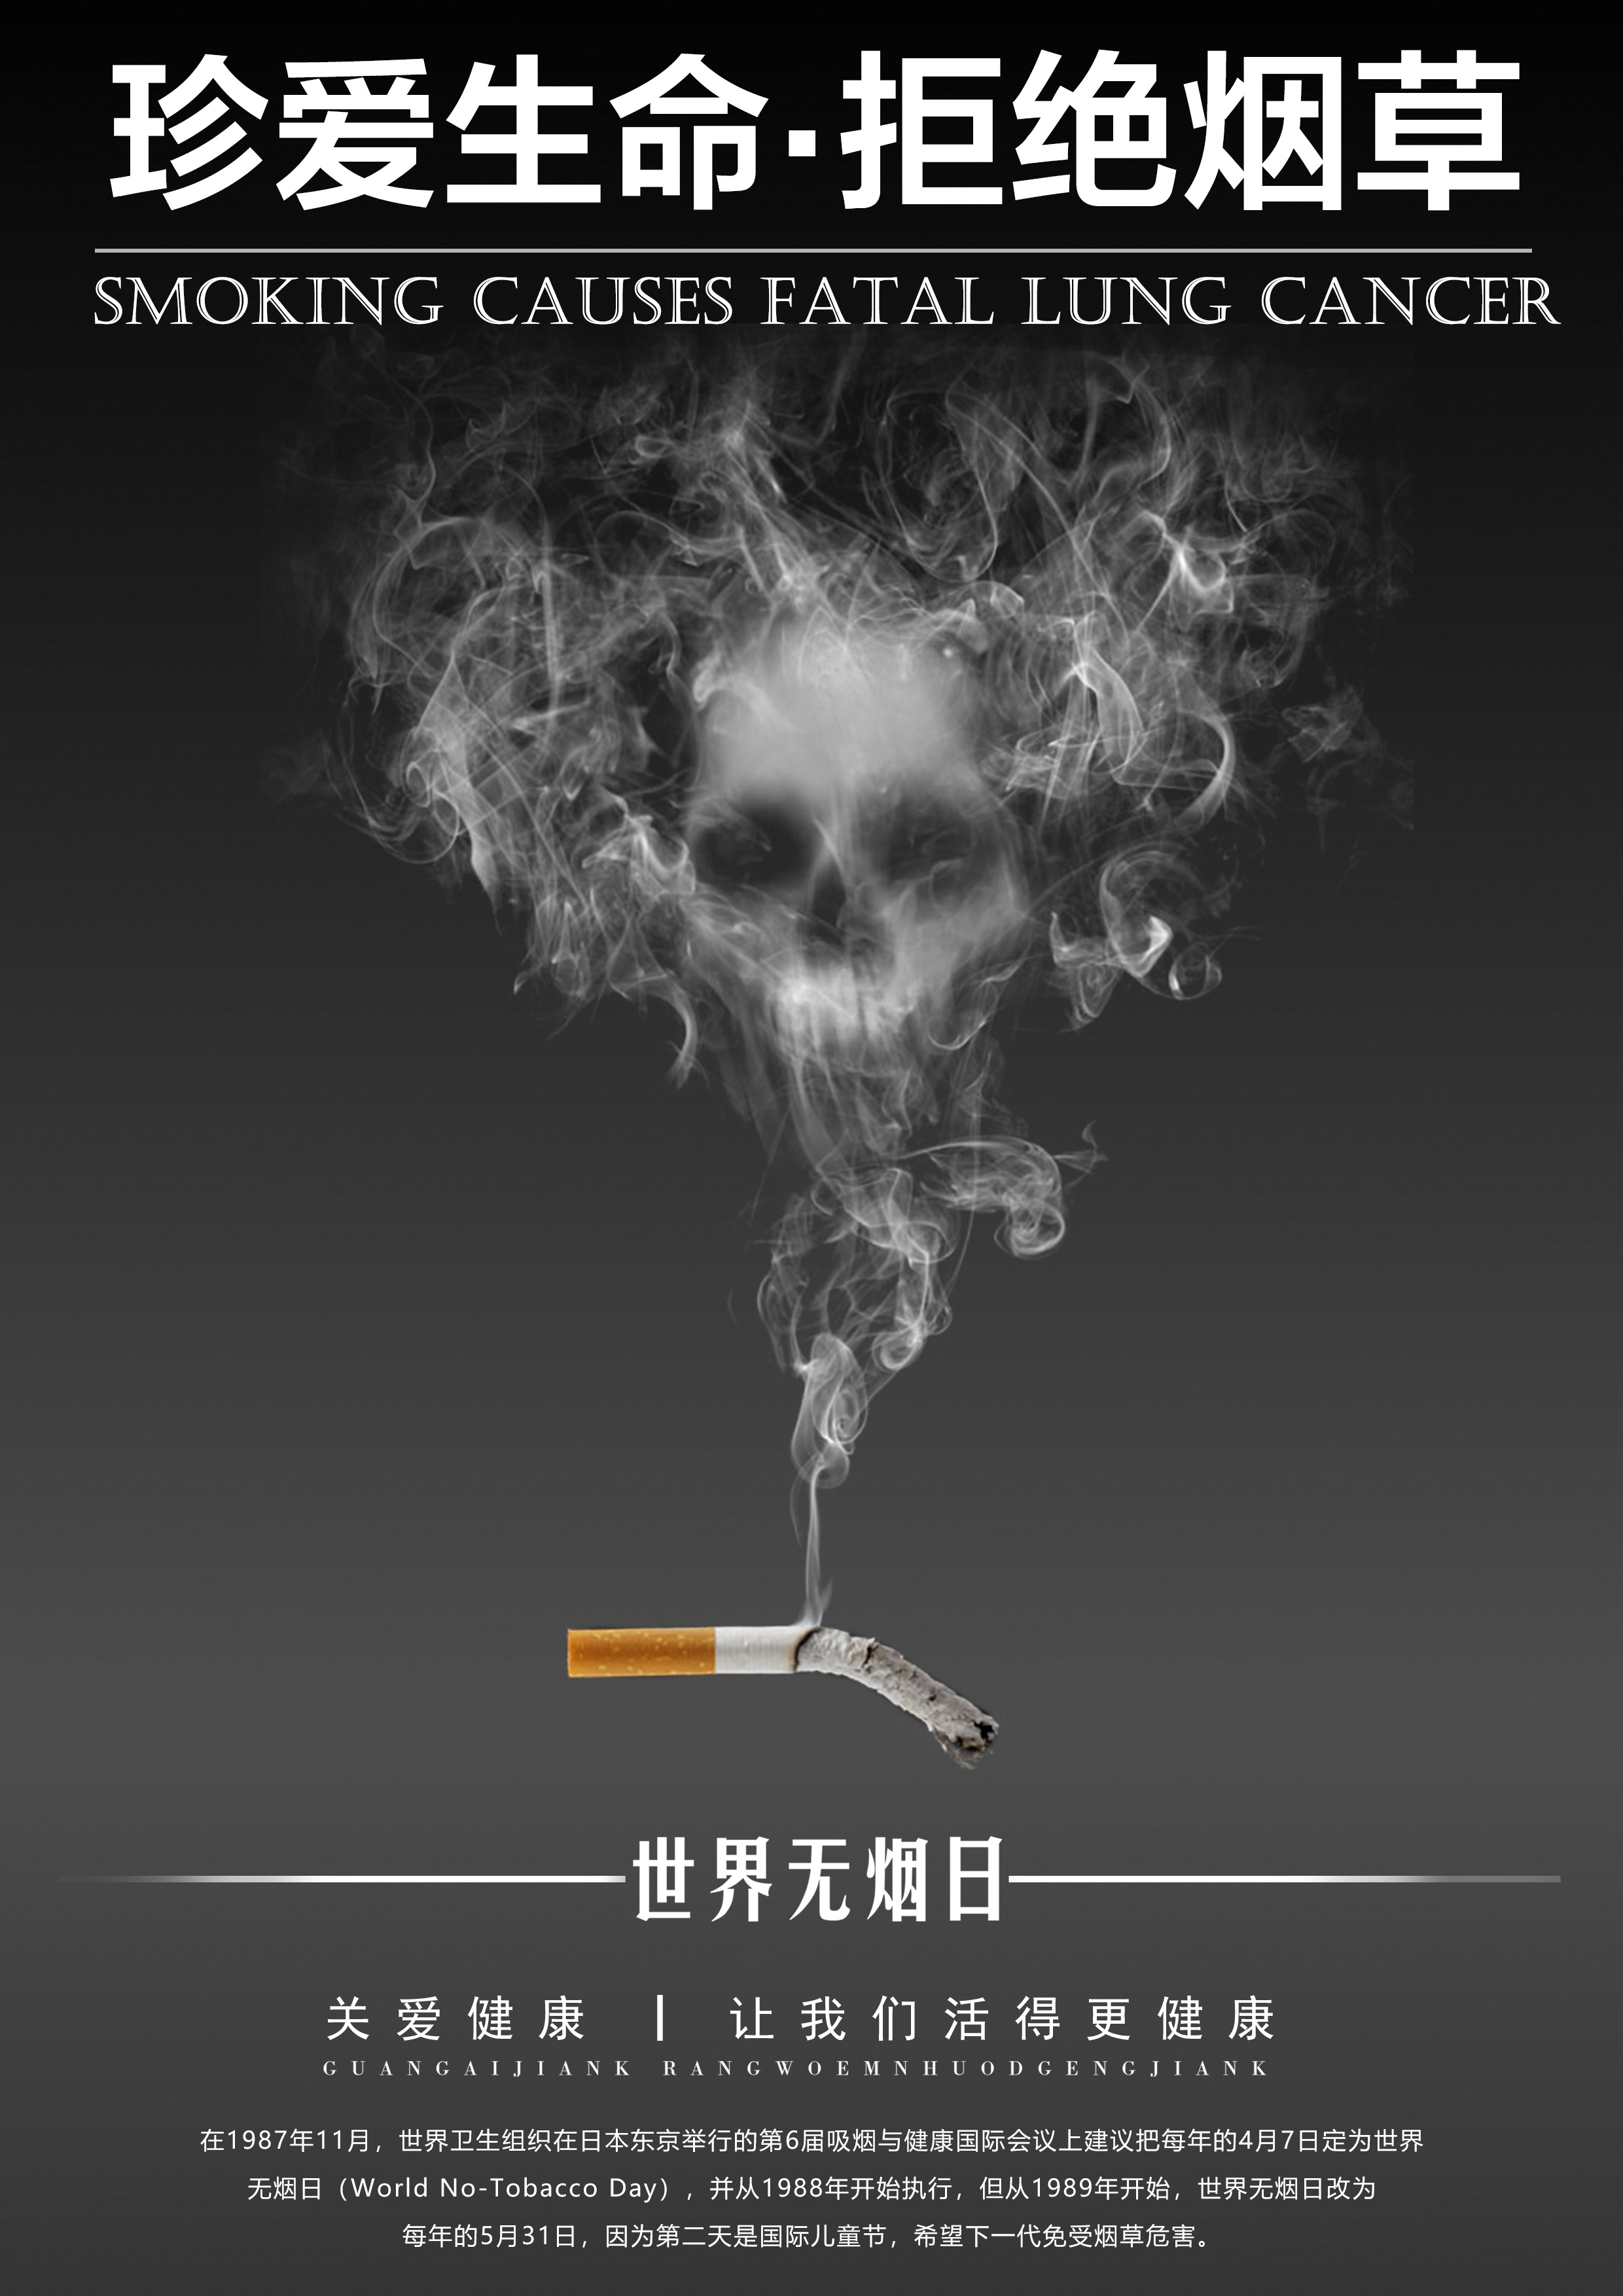 香烟图片(吸烟有害健康) - 25H.NET壁纸库